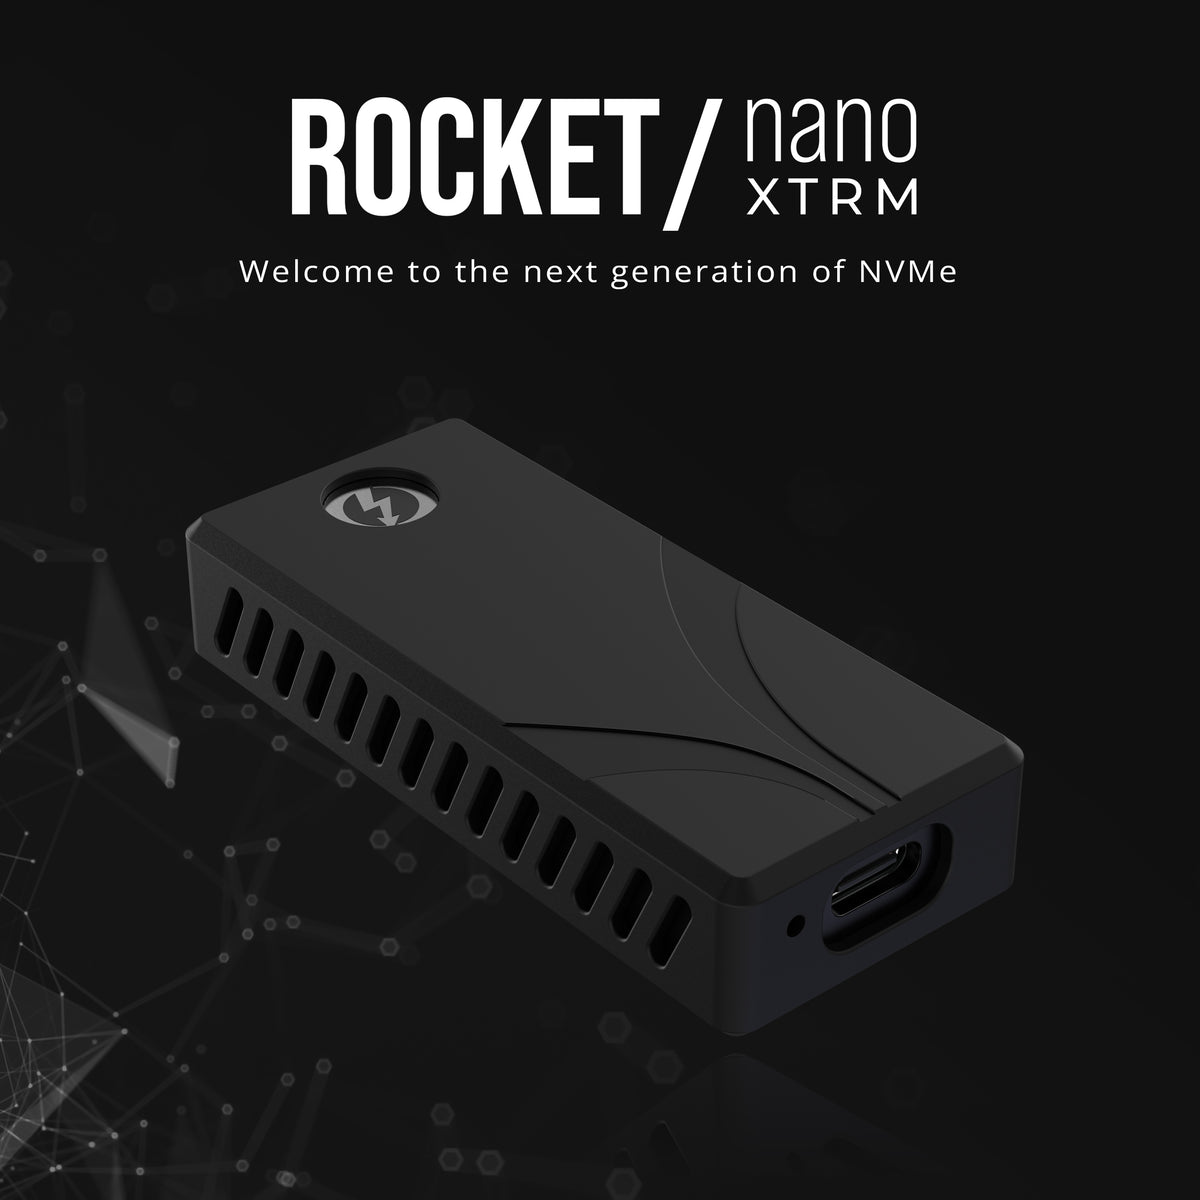 Rocket nano XTRM External SSD